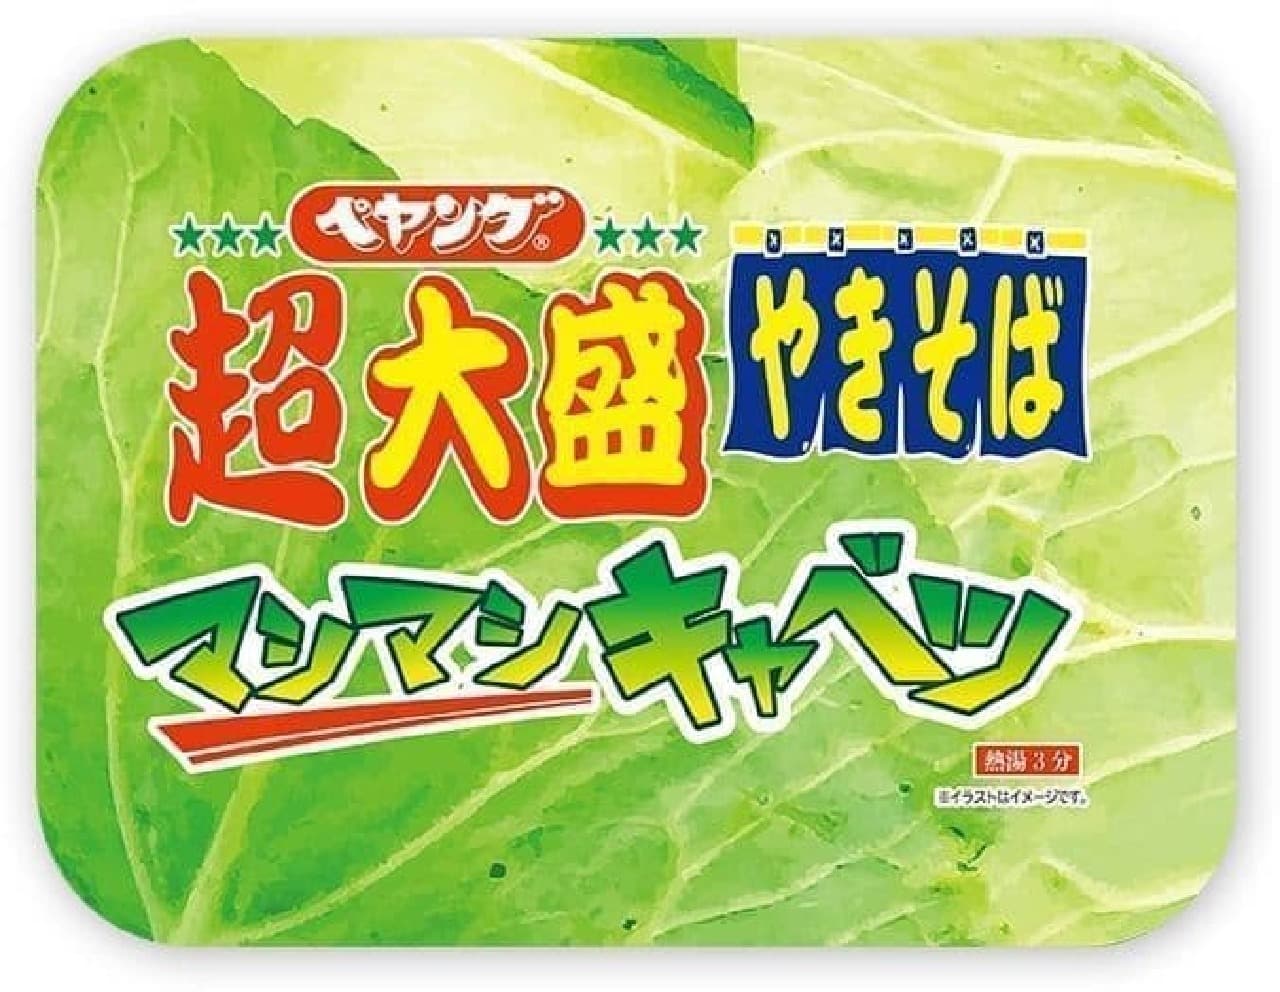 Maruka Foods "Peyoung Super Large Yakisoba Mashimashi Cabbage"